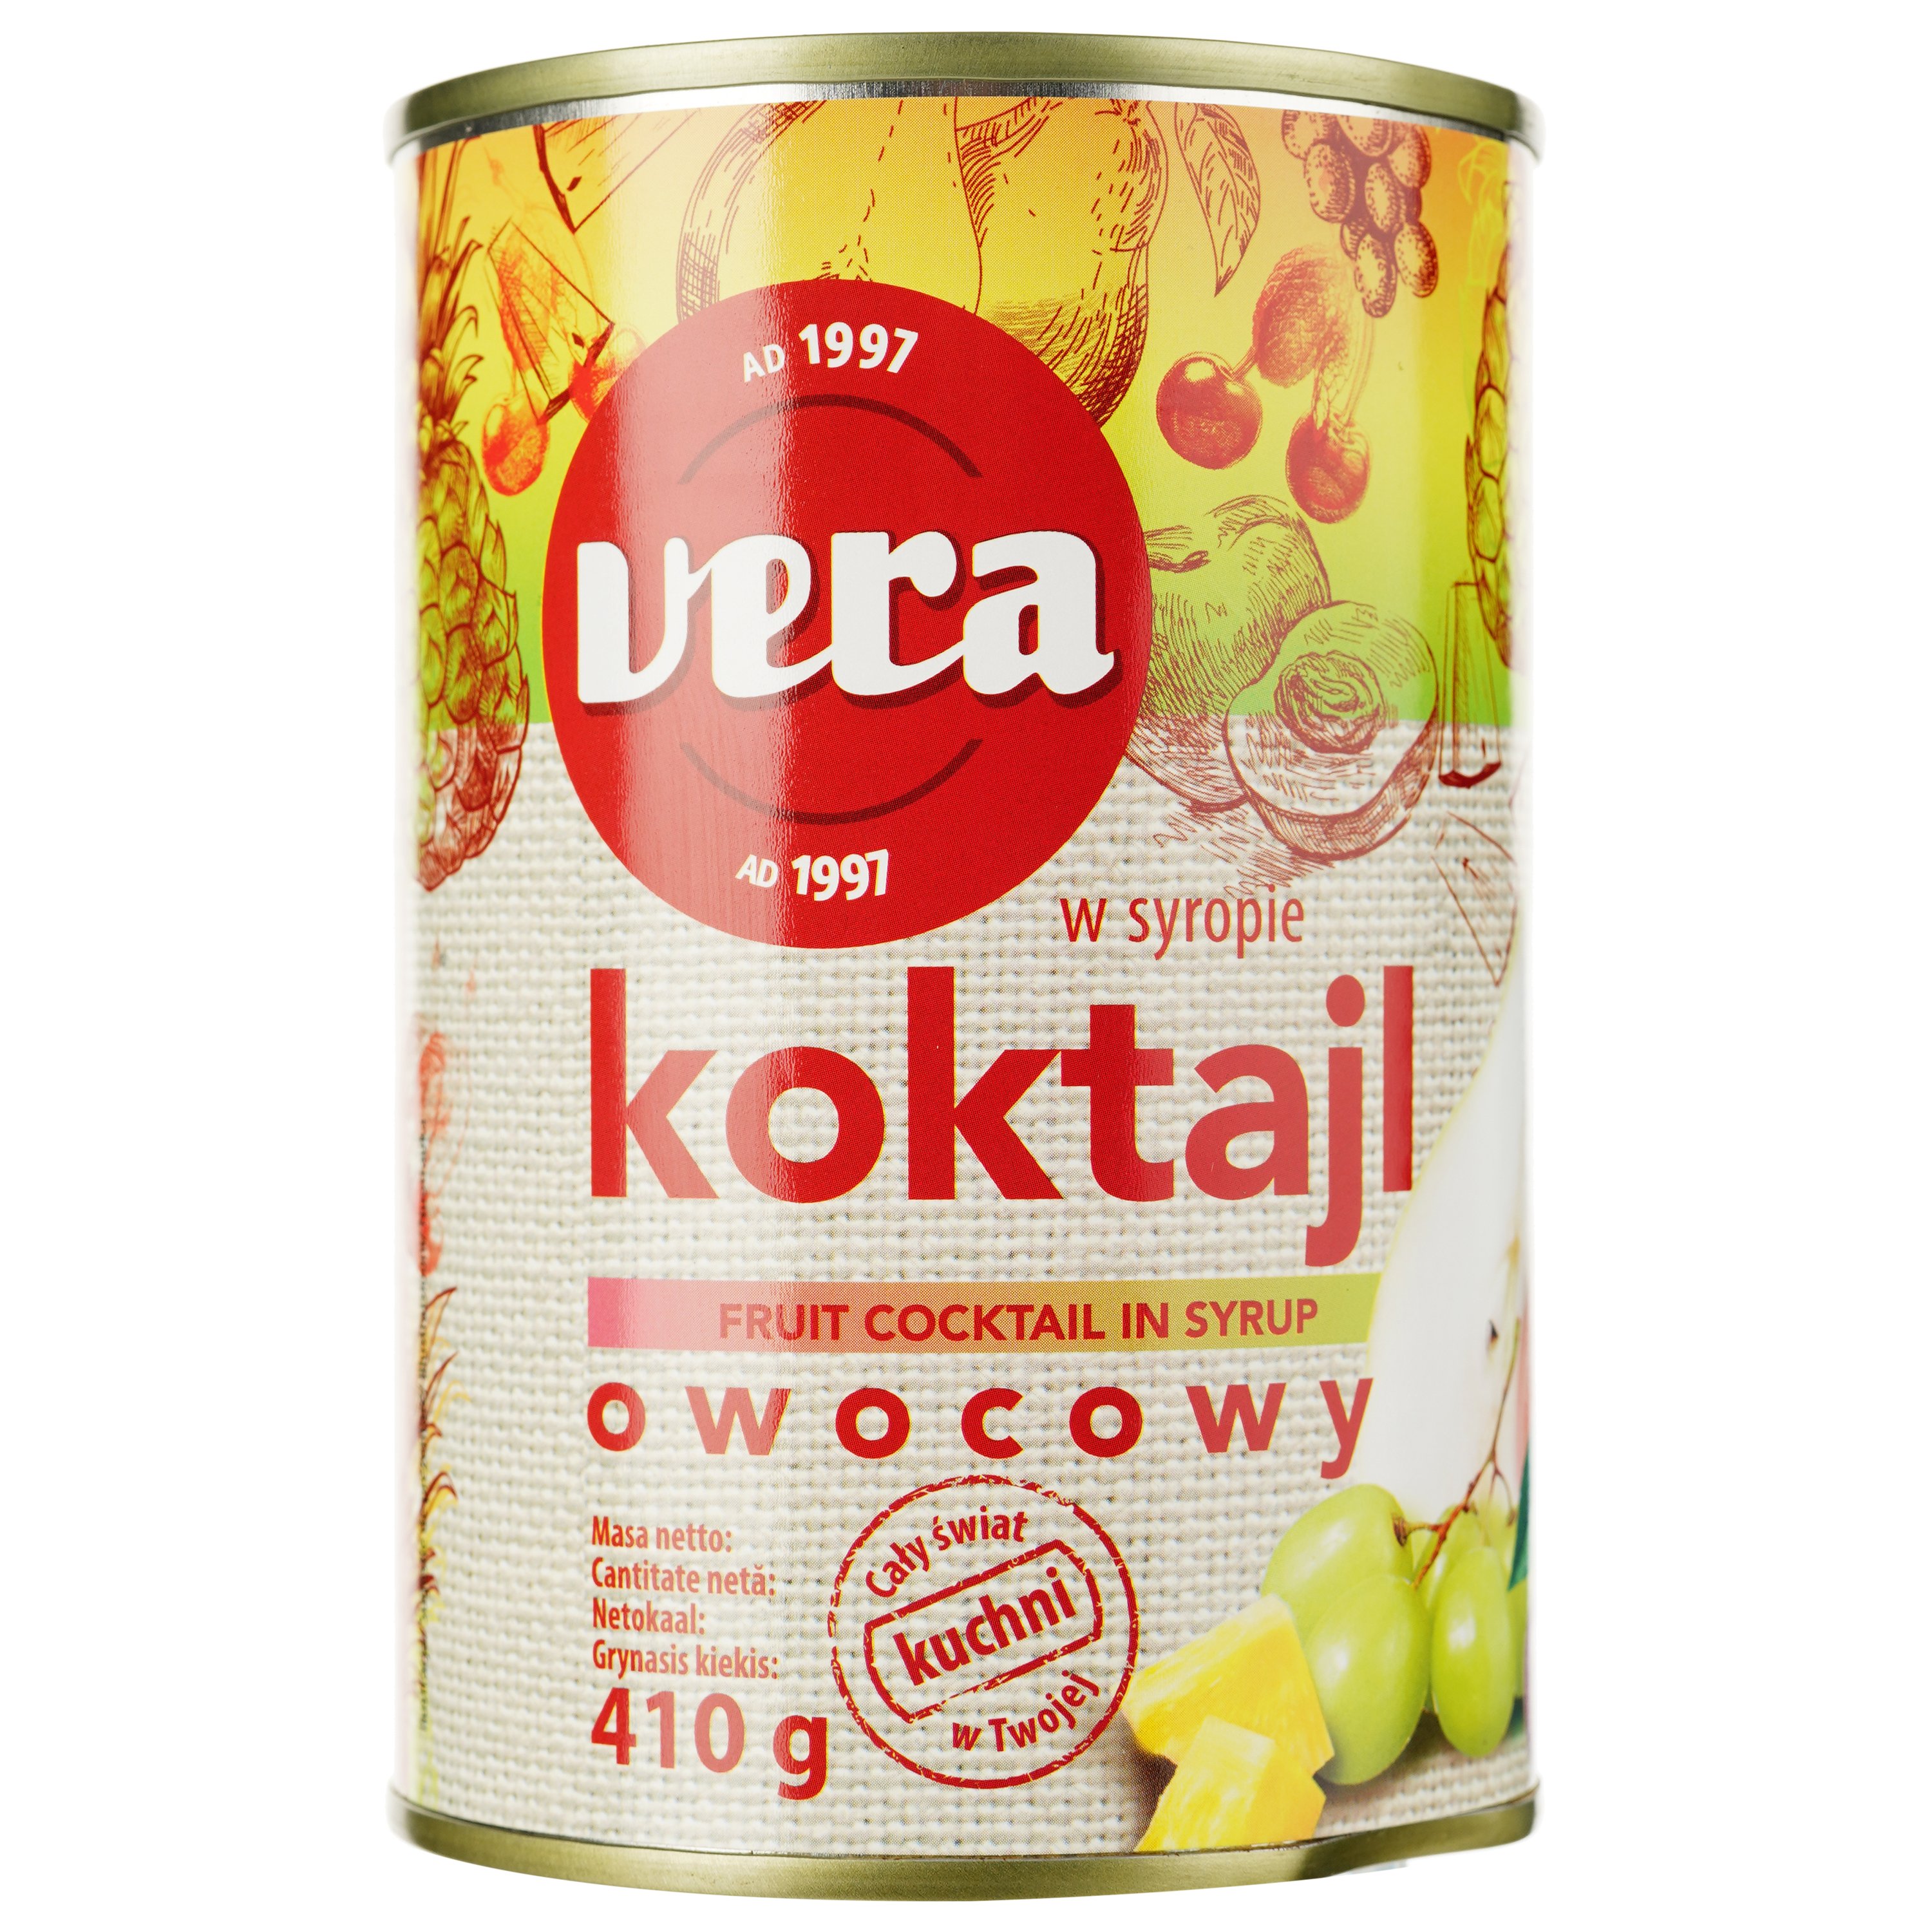 Коктейль Vera Koktajl Owocowy, фруктовий мікс у сиропі, 410 г - фото 1